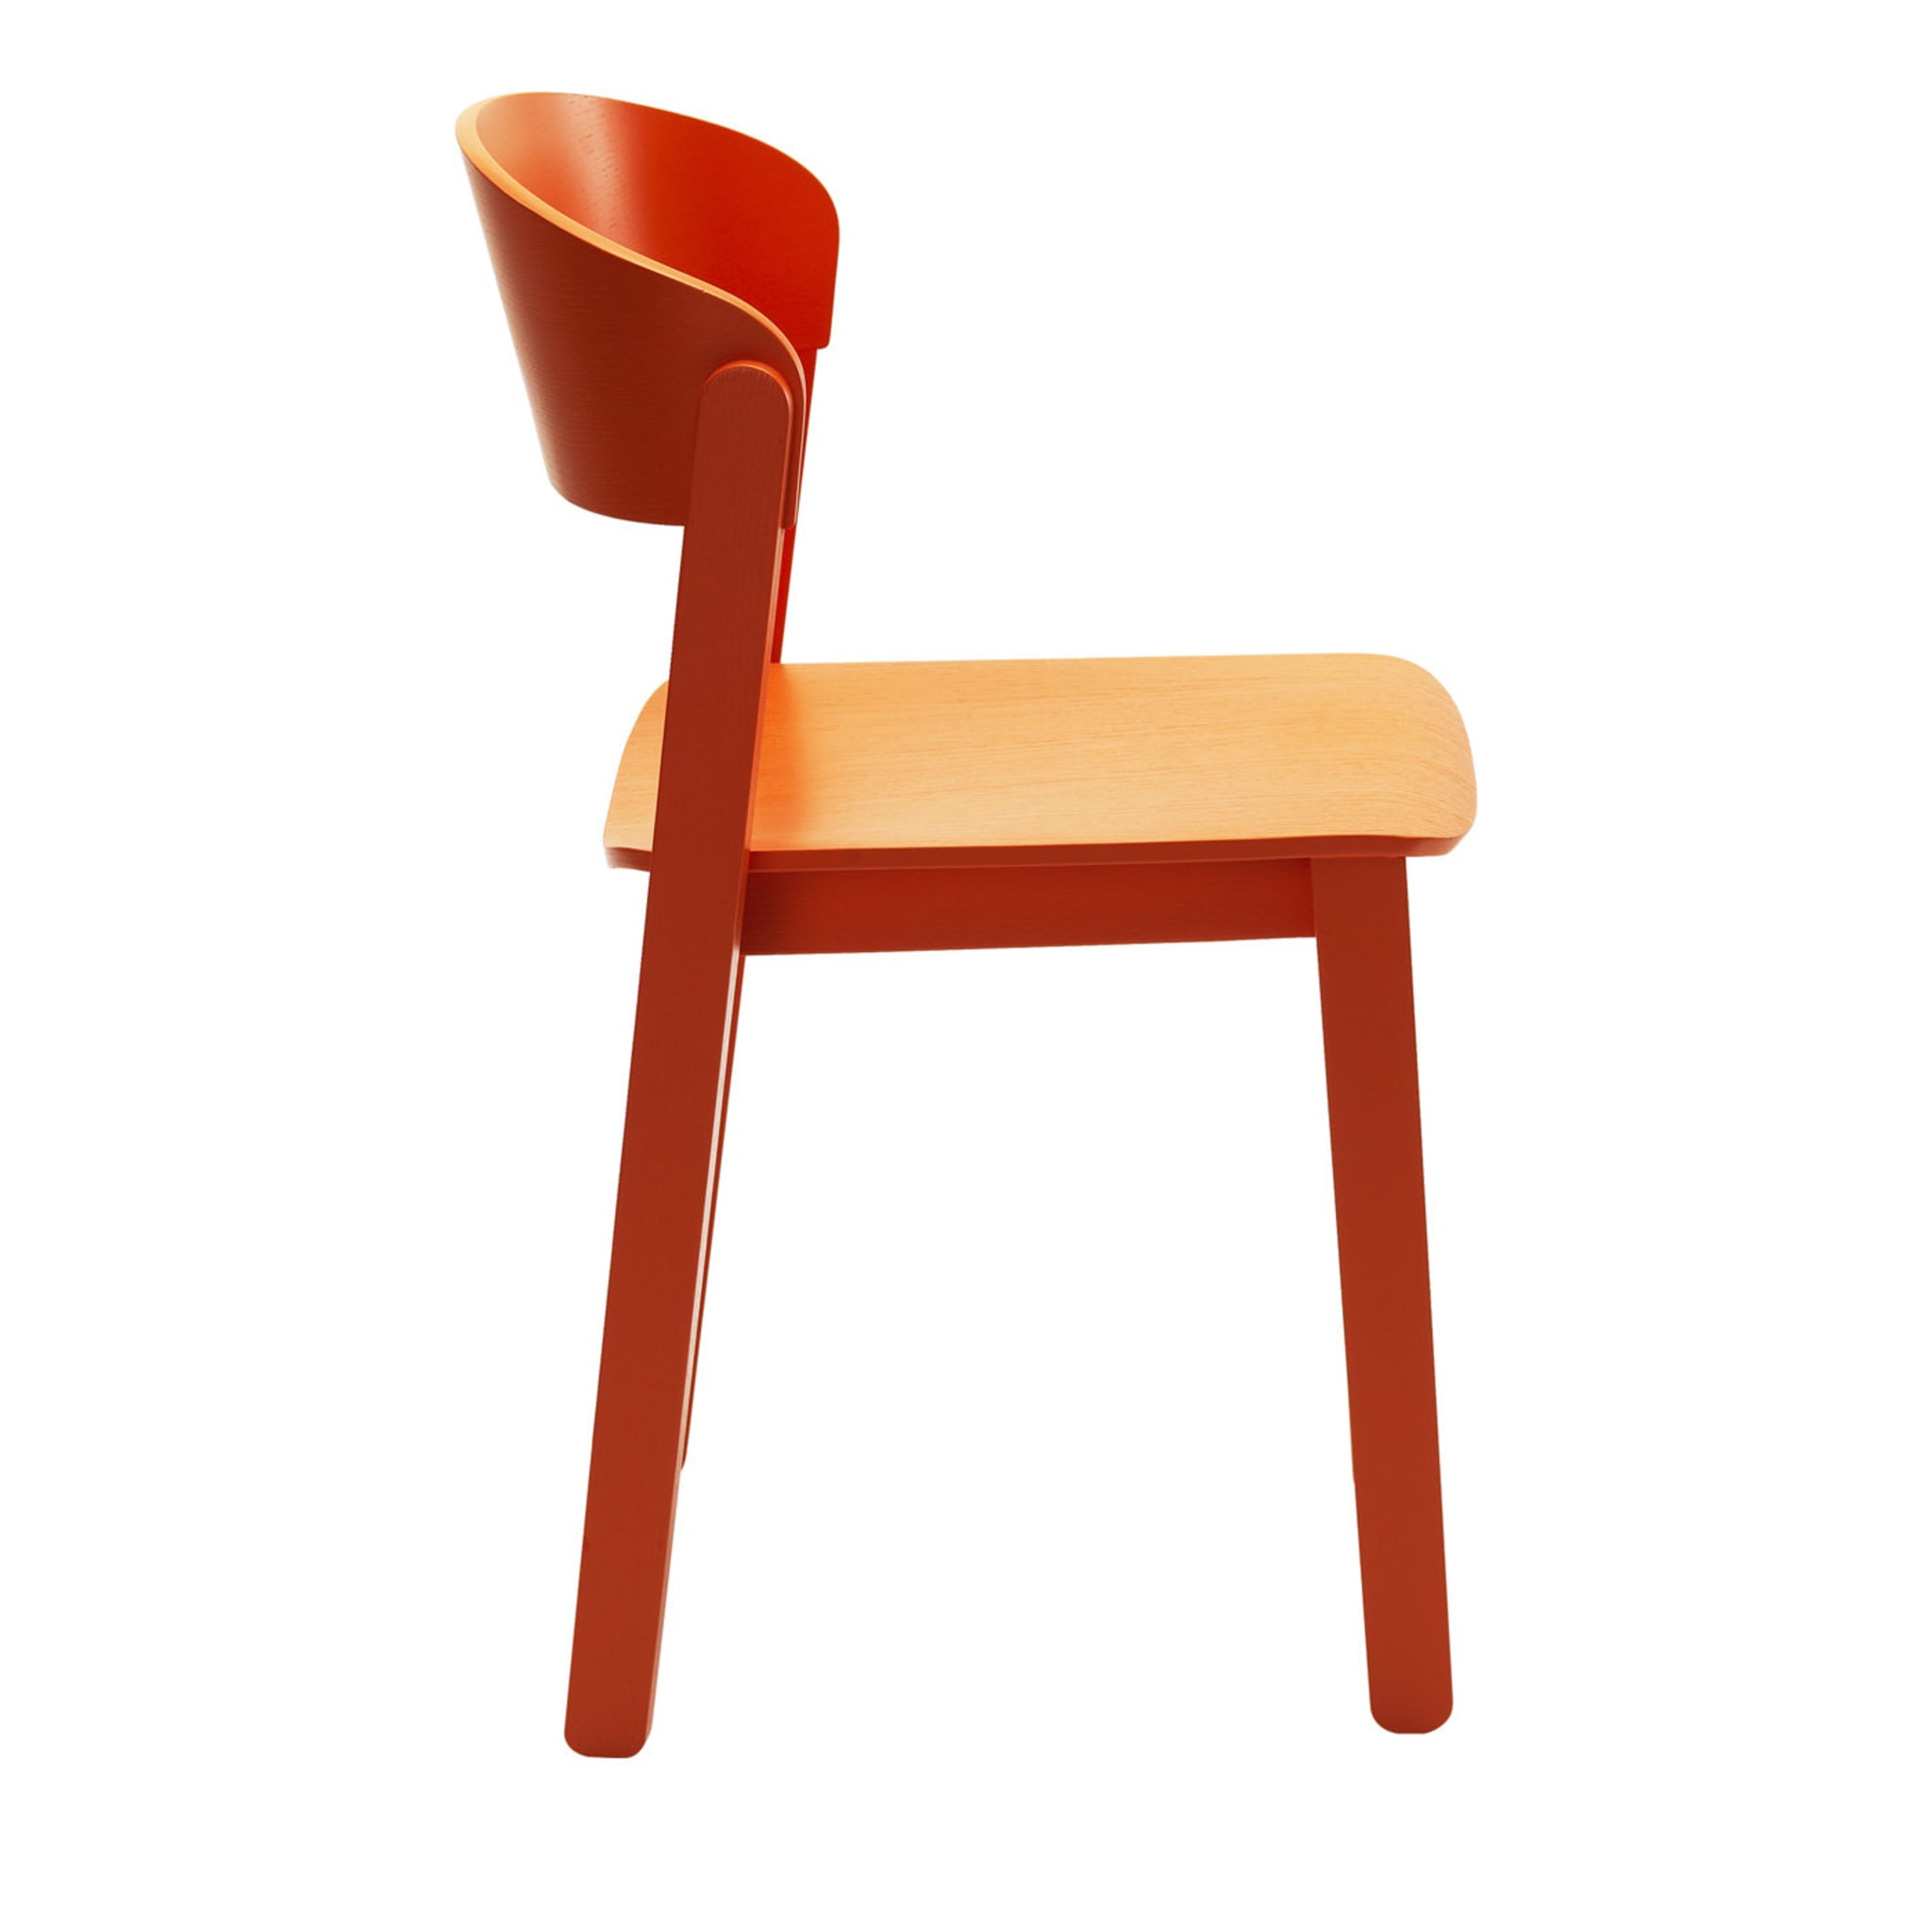 2er set lachs-orange pur stühle von Note Design Studio - Hauptansicht